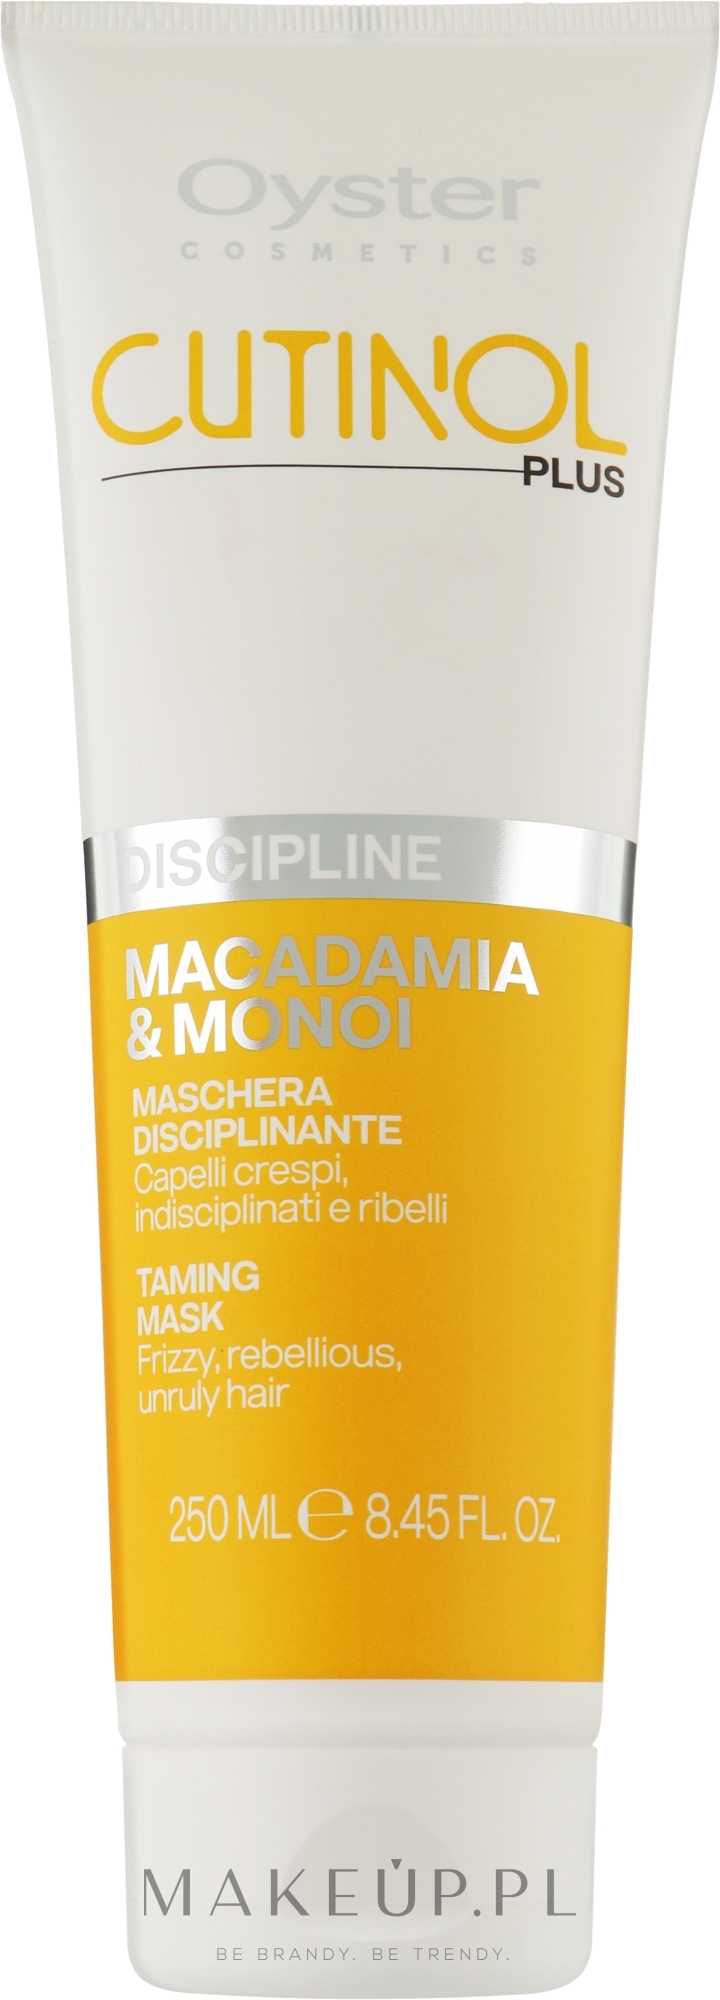 Maska do niesfornych włosów - Oyster Cutinol Plus Macadamia & Monoi Oil Discipline Mask — Zdjęcie 250 ml